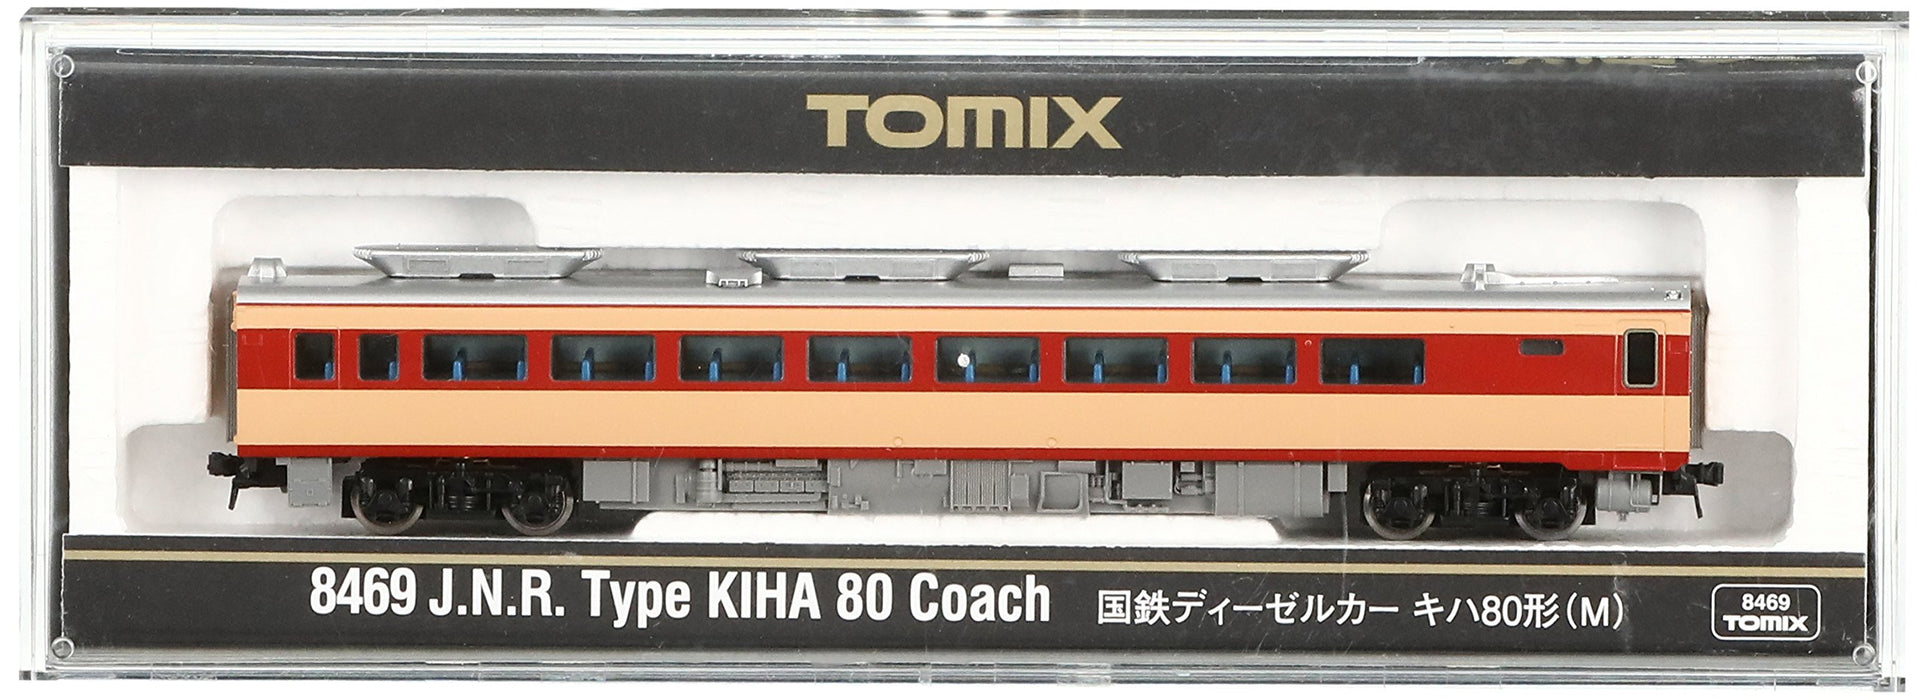 Tomytec Tomix N Gauge Kiha 80 M 8469 Diesel Model Railway Car